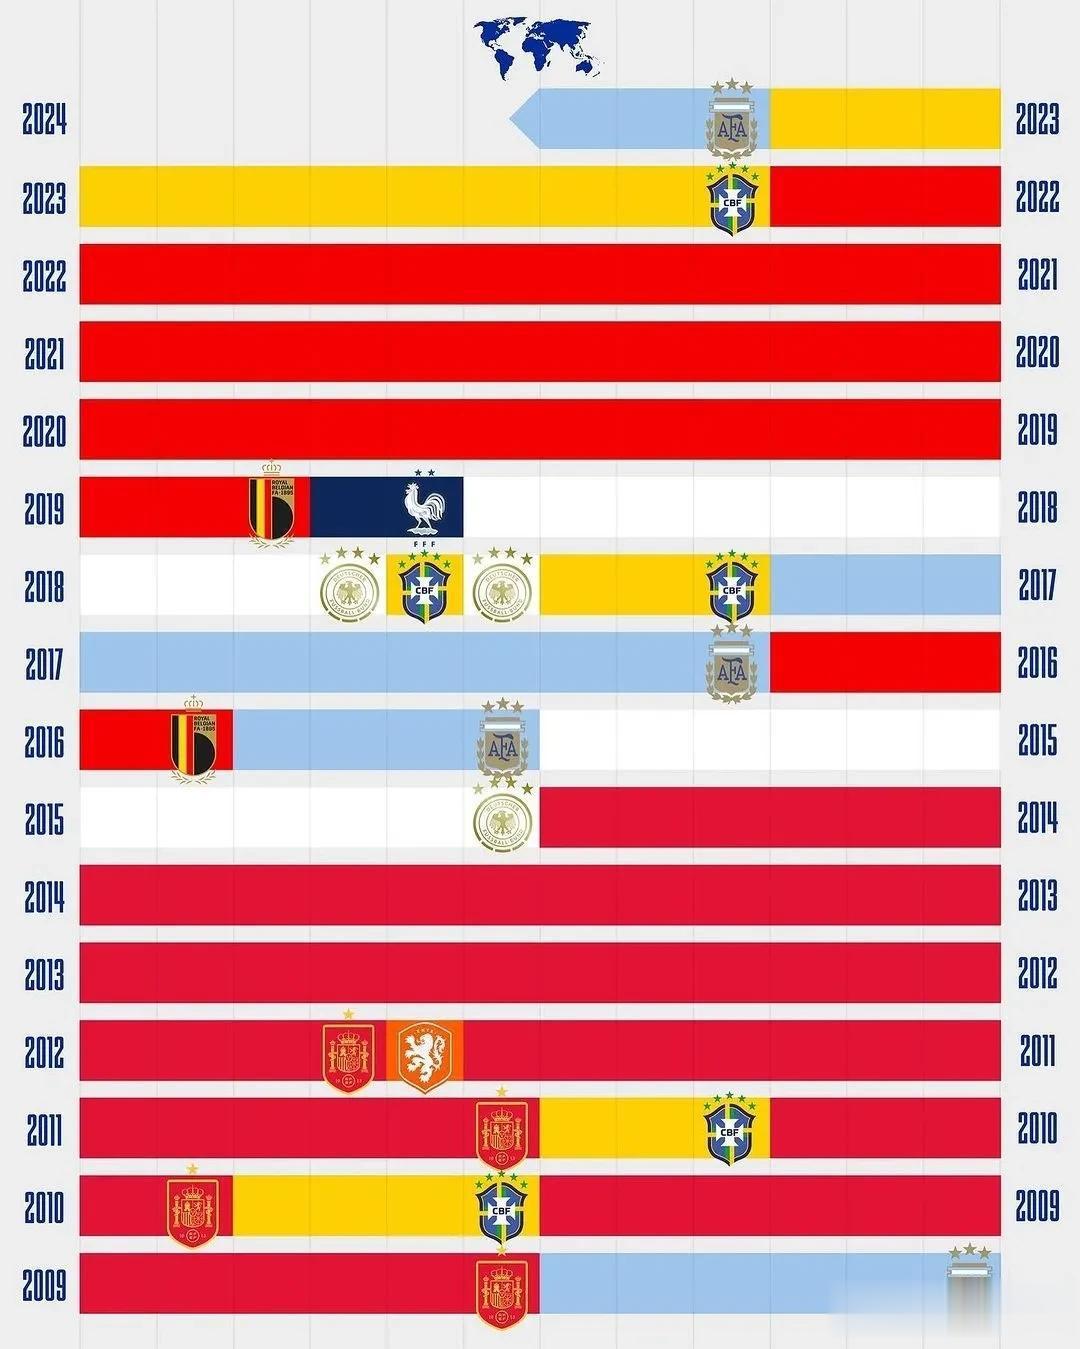 阿根廷坐稳了国际足联国家队积分榜首位置，从榜首球队演变看，西班牙国家队几乎垄断了